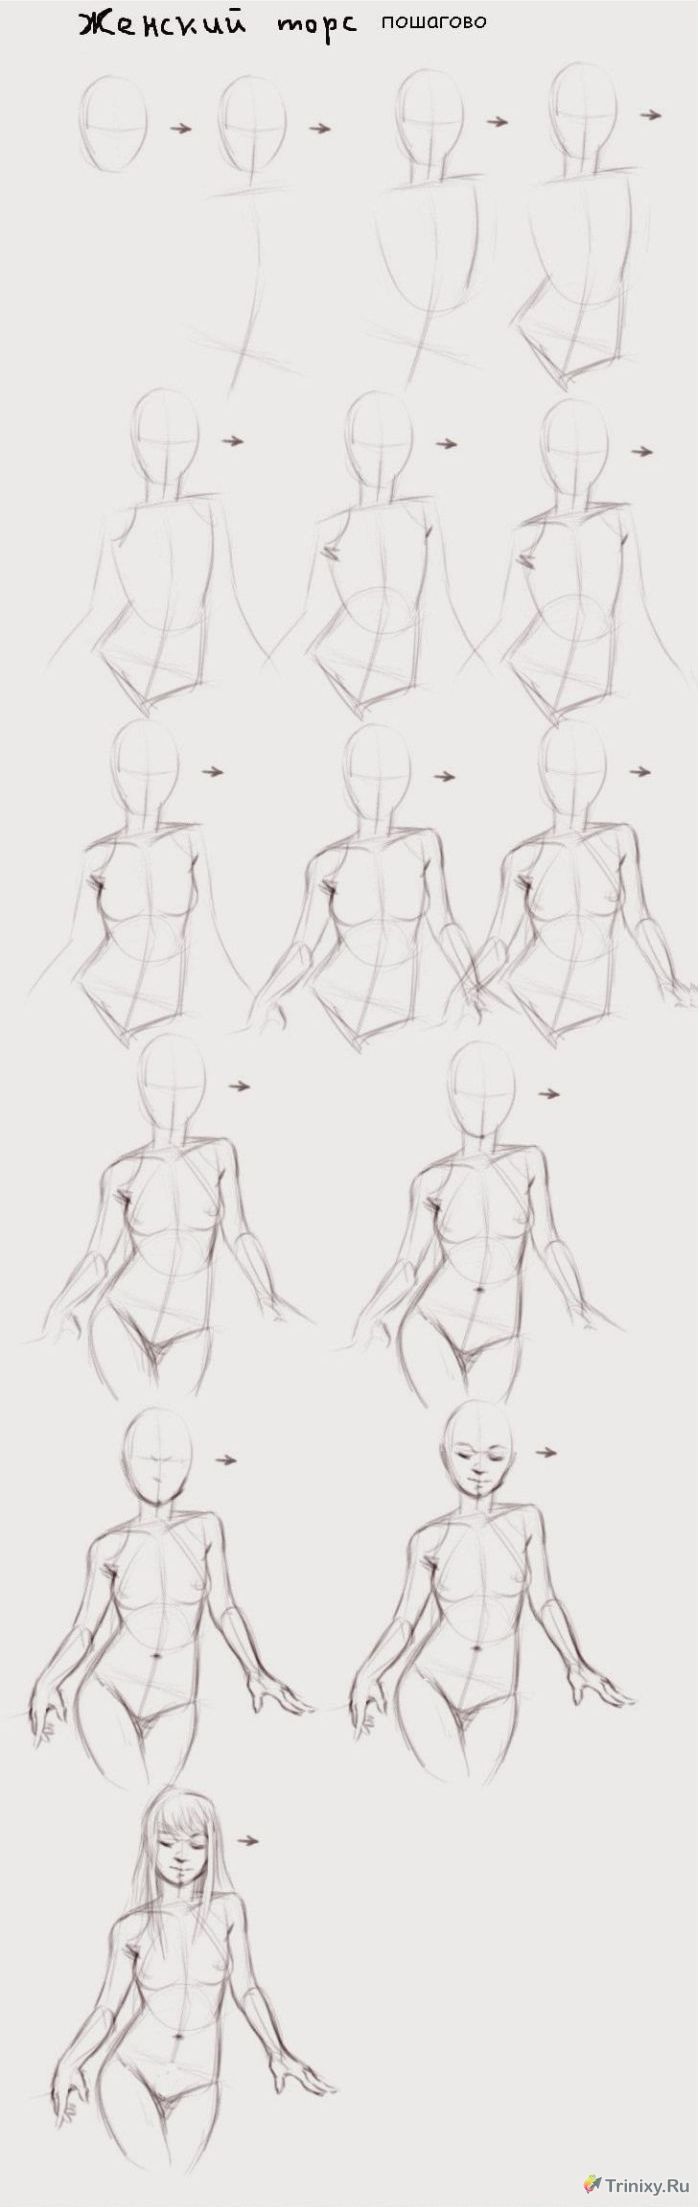 Учимся рисовать пикантные подробности женского тела (9 рисунков) » Триникси